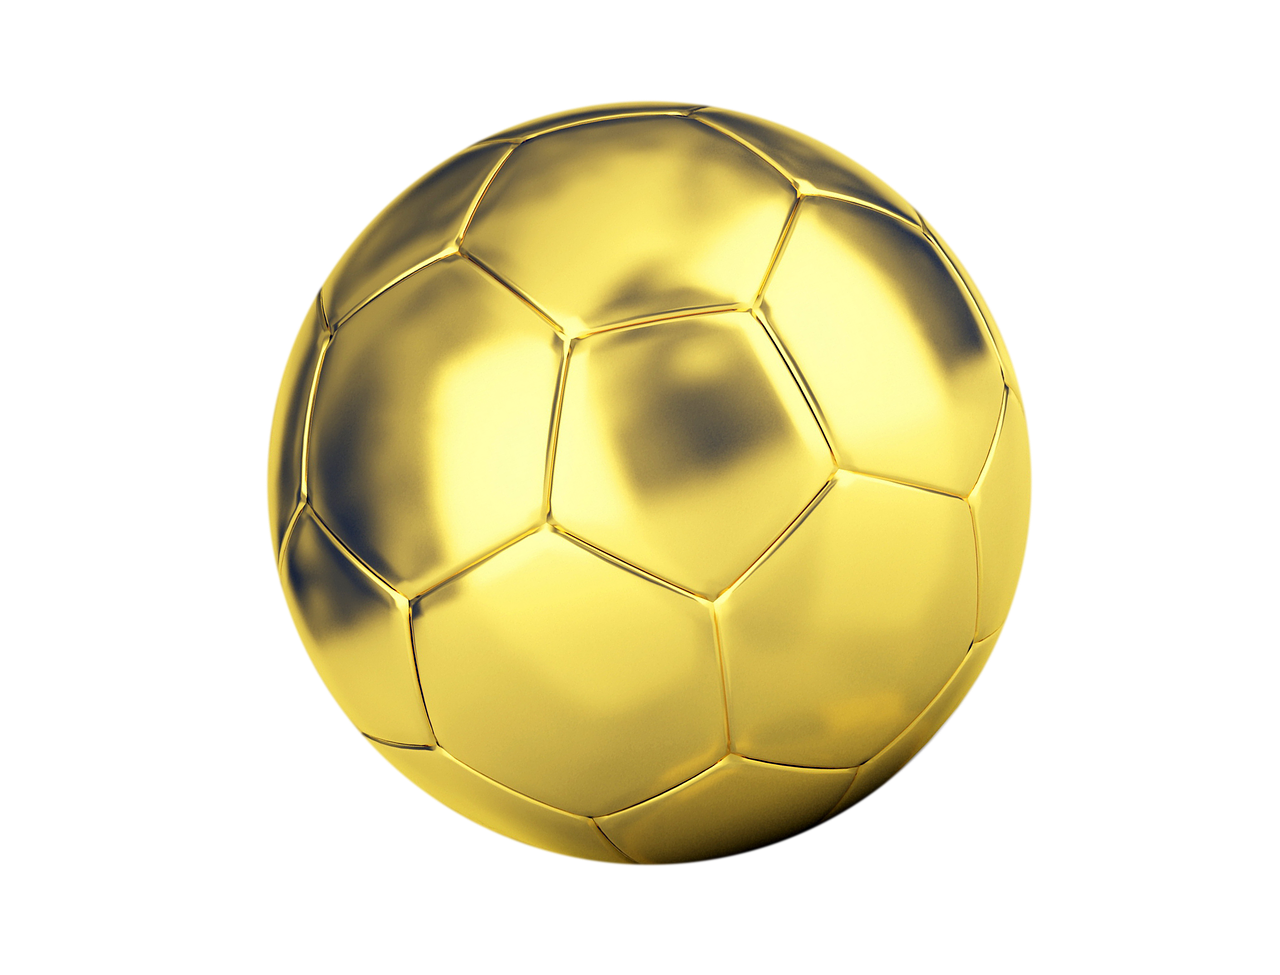 ball football golden ball free photo